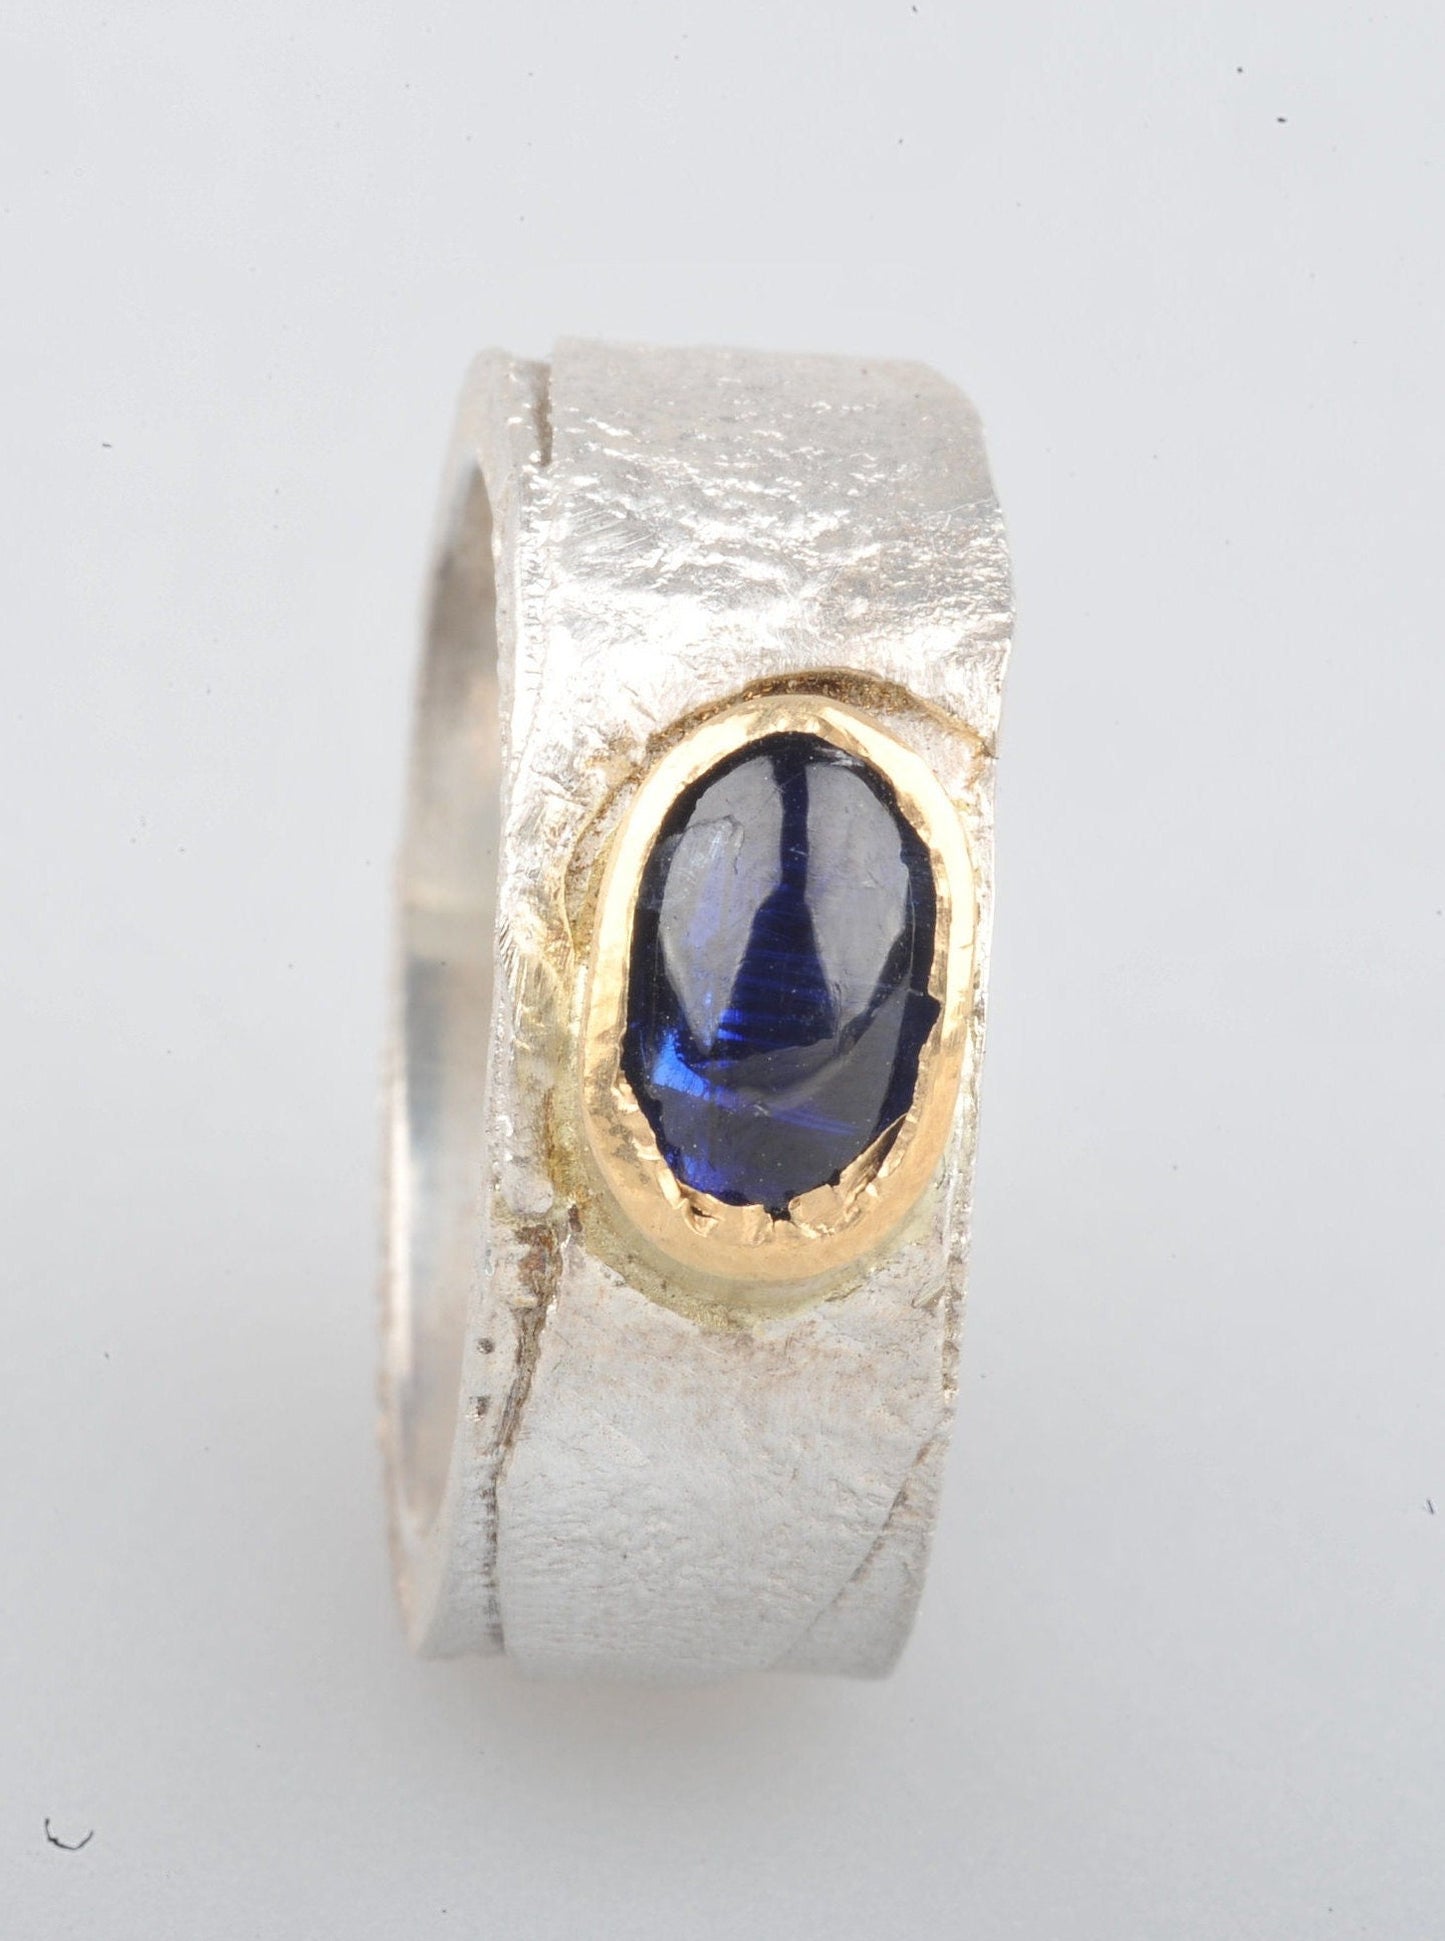 
                  
                    Dieser Ring hat ein schönes Gewicht. Das Band ist 8 mm breit und 2 mm dick. Die Oberfläche wurde retikuliert (ich bringe die Oberfläche des Silbers zum Schmelzpunkt und lasse sie abkühlen. Dies wird mehrmals wiederholt, bis ich mit der Oberflächenstruktur zufrieden bin), während die Innenseite des Bandes glatt und poliert ist. Der Cyanit hat ein wunderschönes tiefes Blau.
                  
                